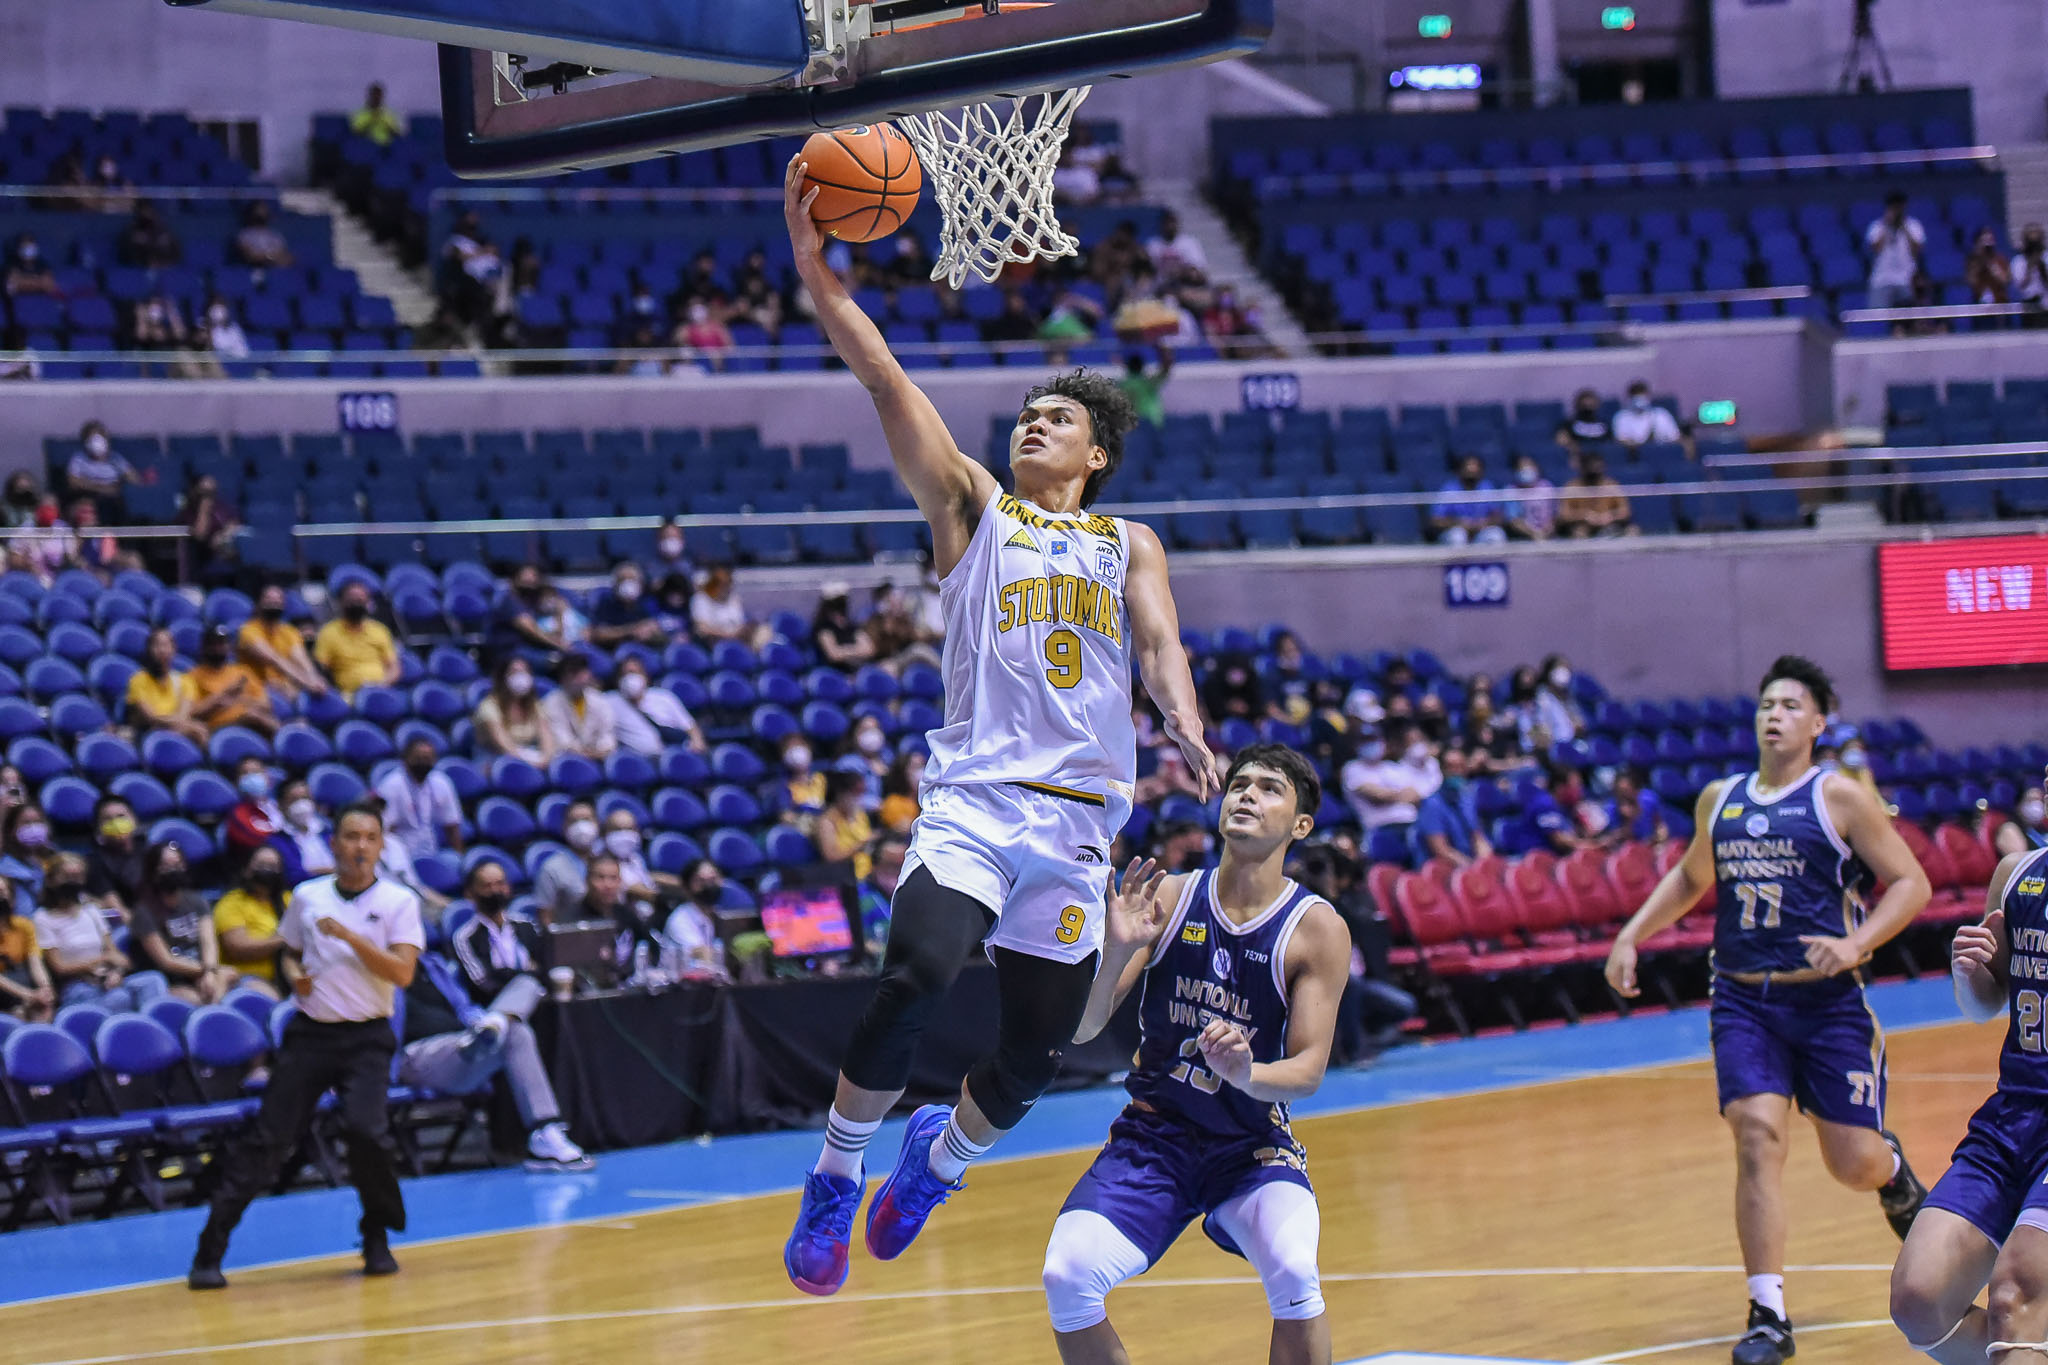 UAAP-85-MBB-NU-vs.-UST-Nic-Cabanero-2201 Nic Cabanero hopes rest of UST steps up: 'Kailangan ko rin ng may shadow sa akin' Basketball News UAAP UST  - philippine sports news